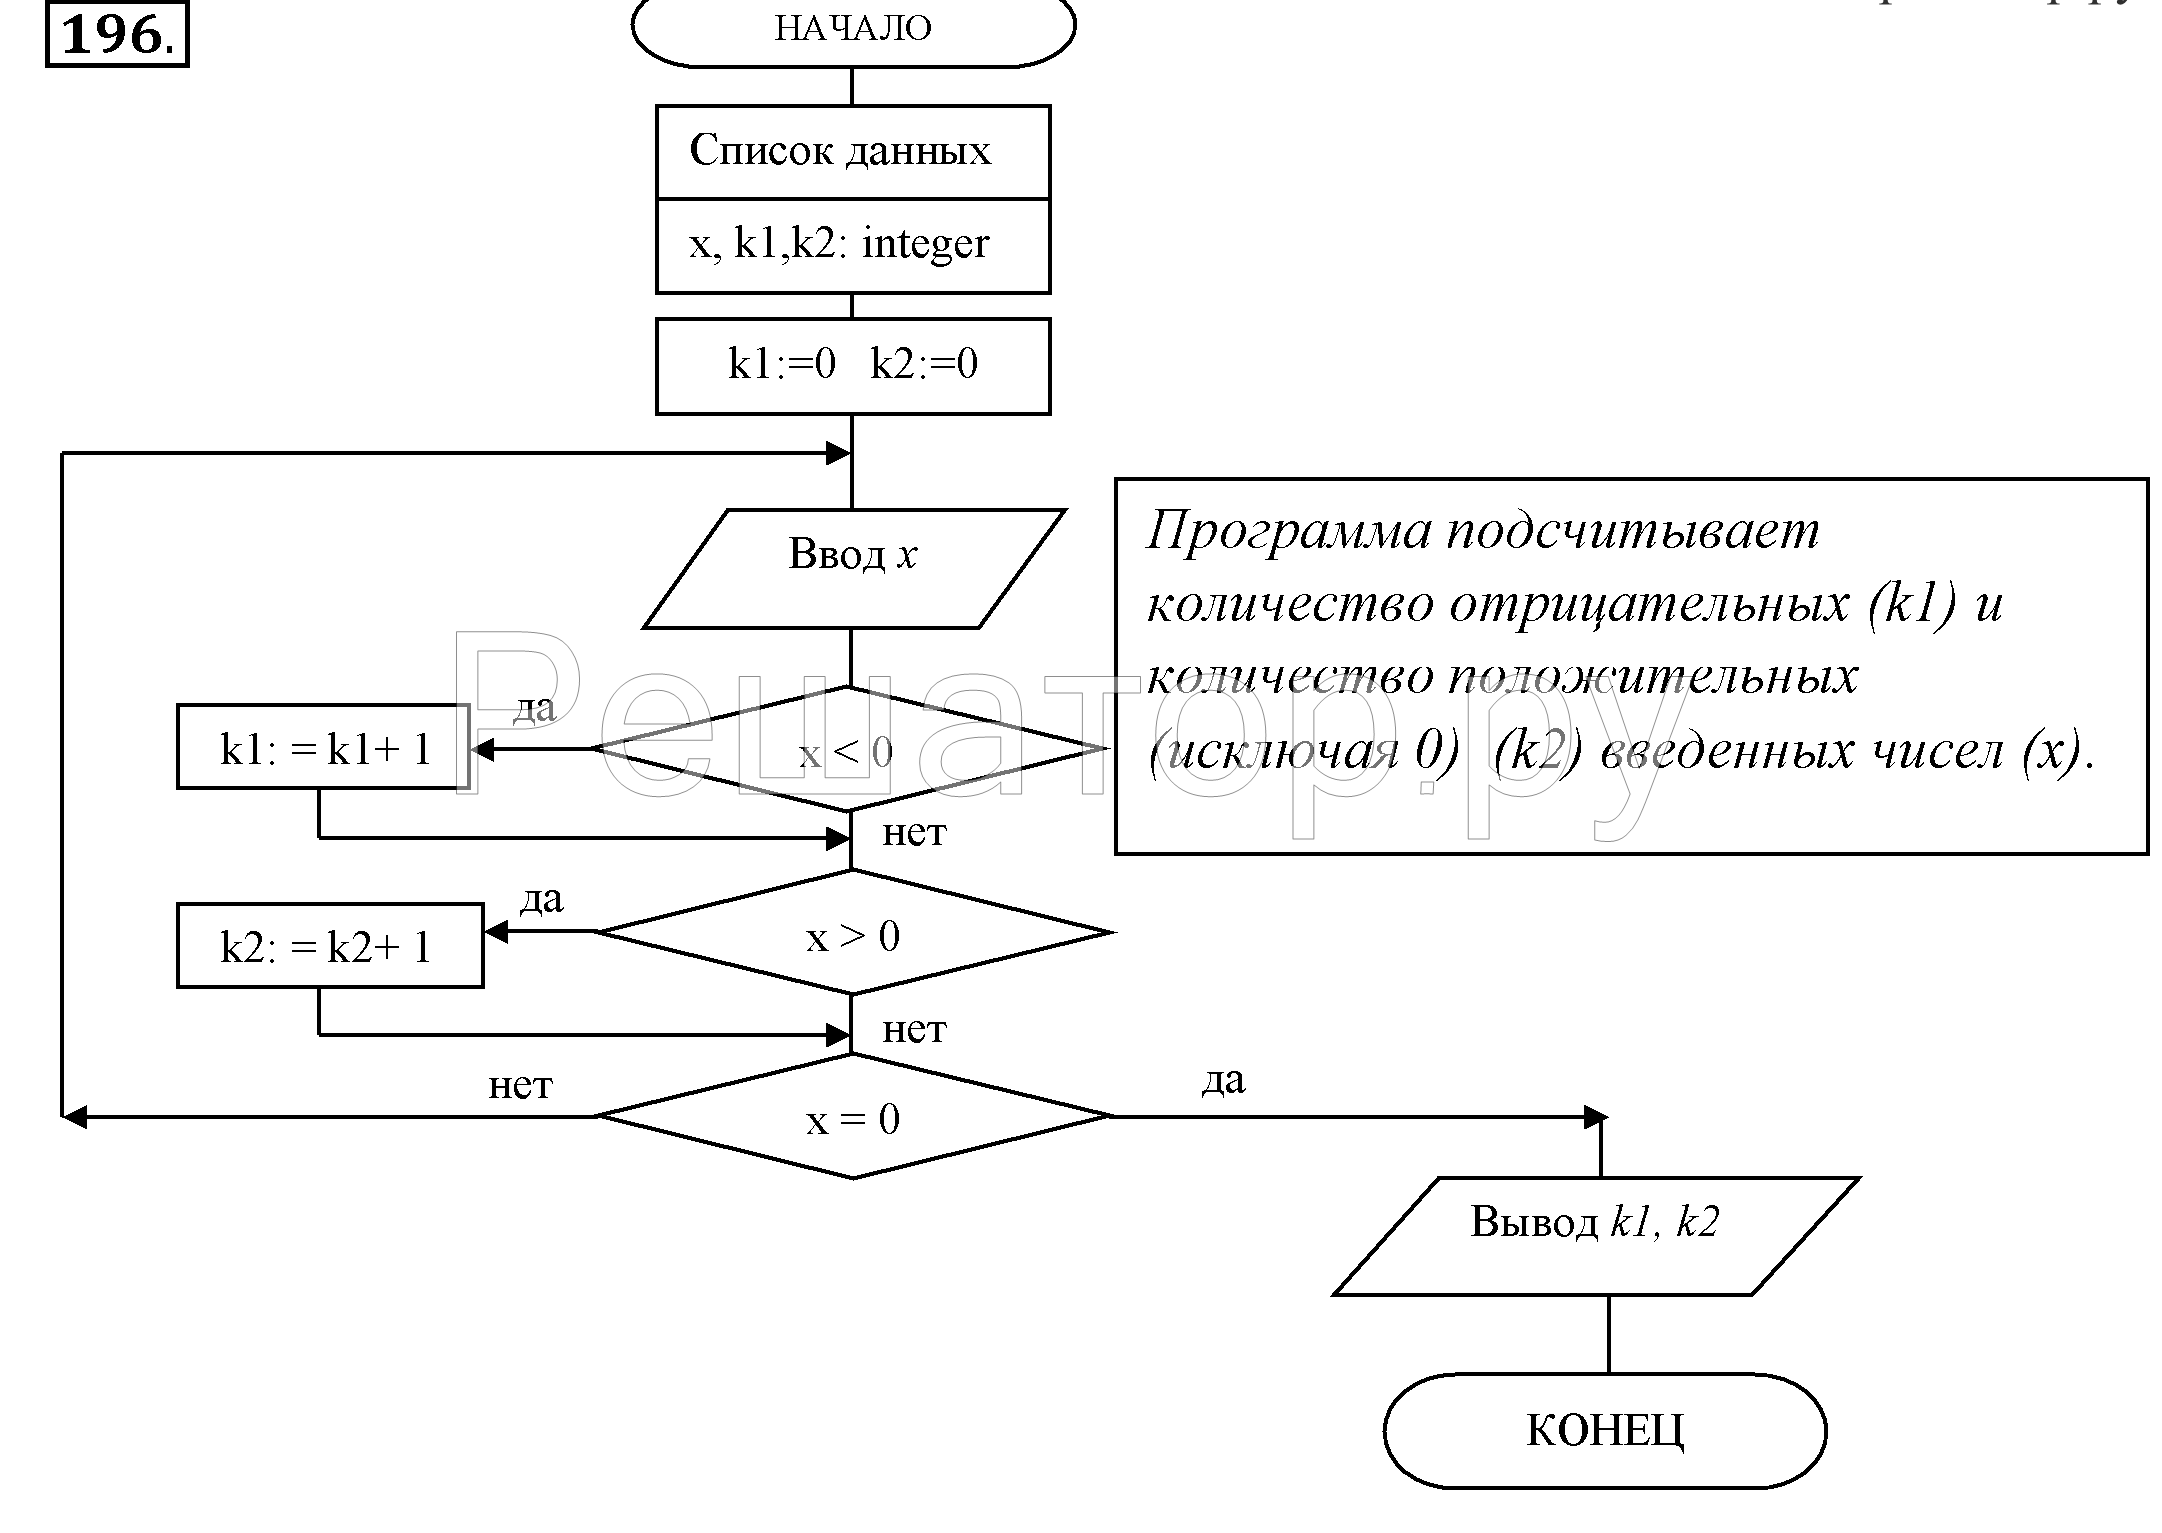 Составьте блок схему соответствующую фрагменту программы z 0 if